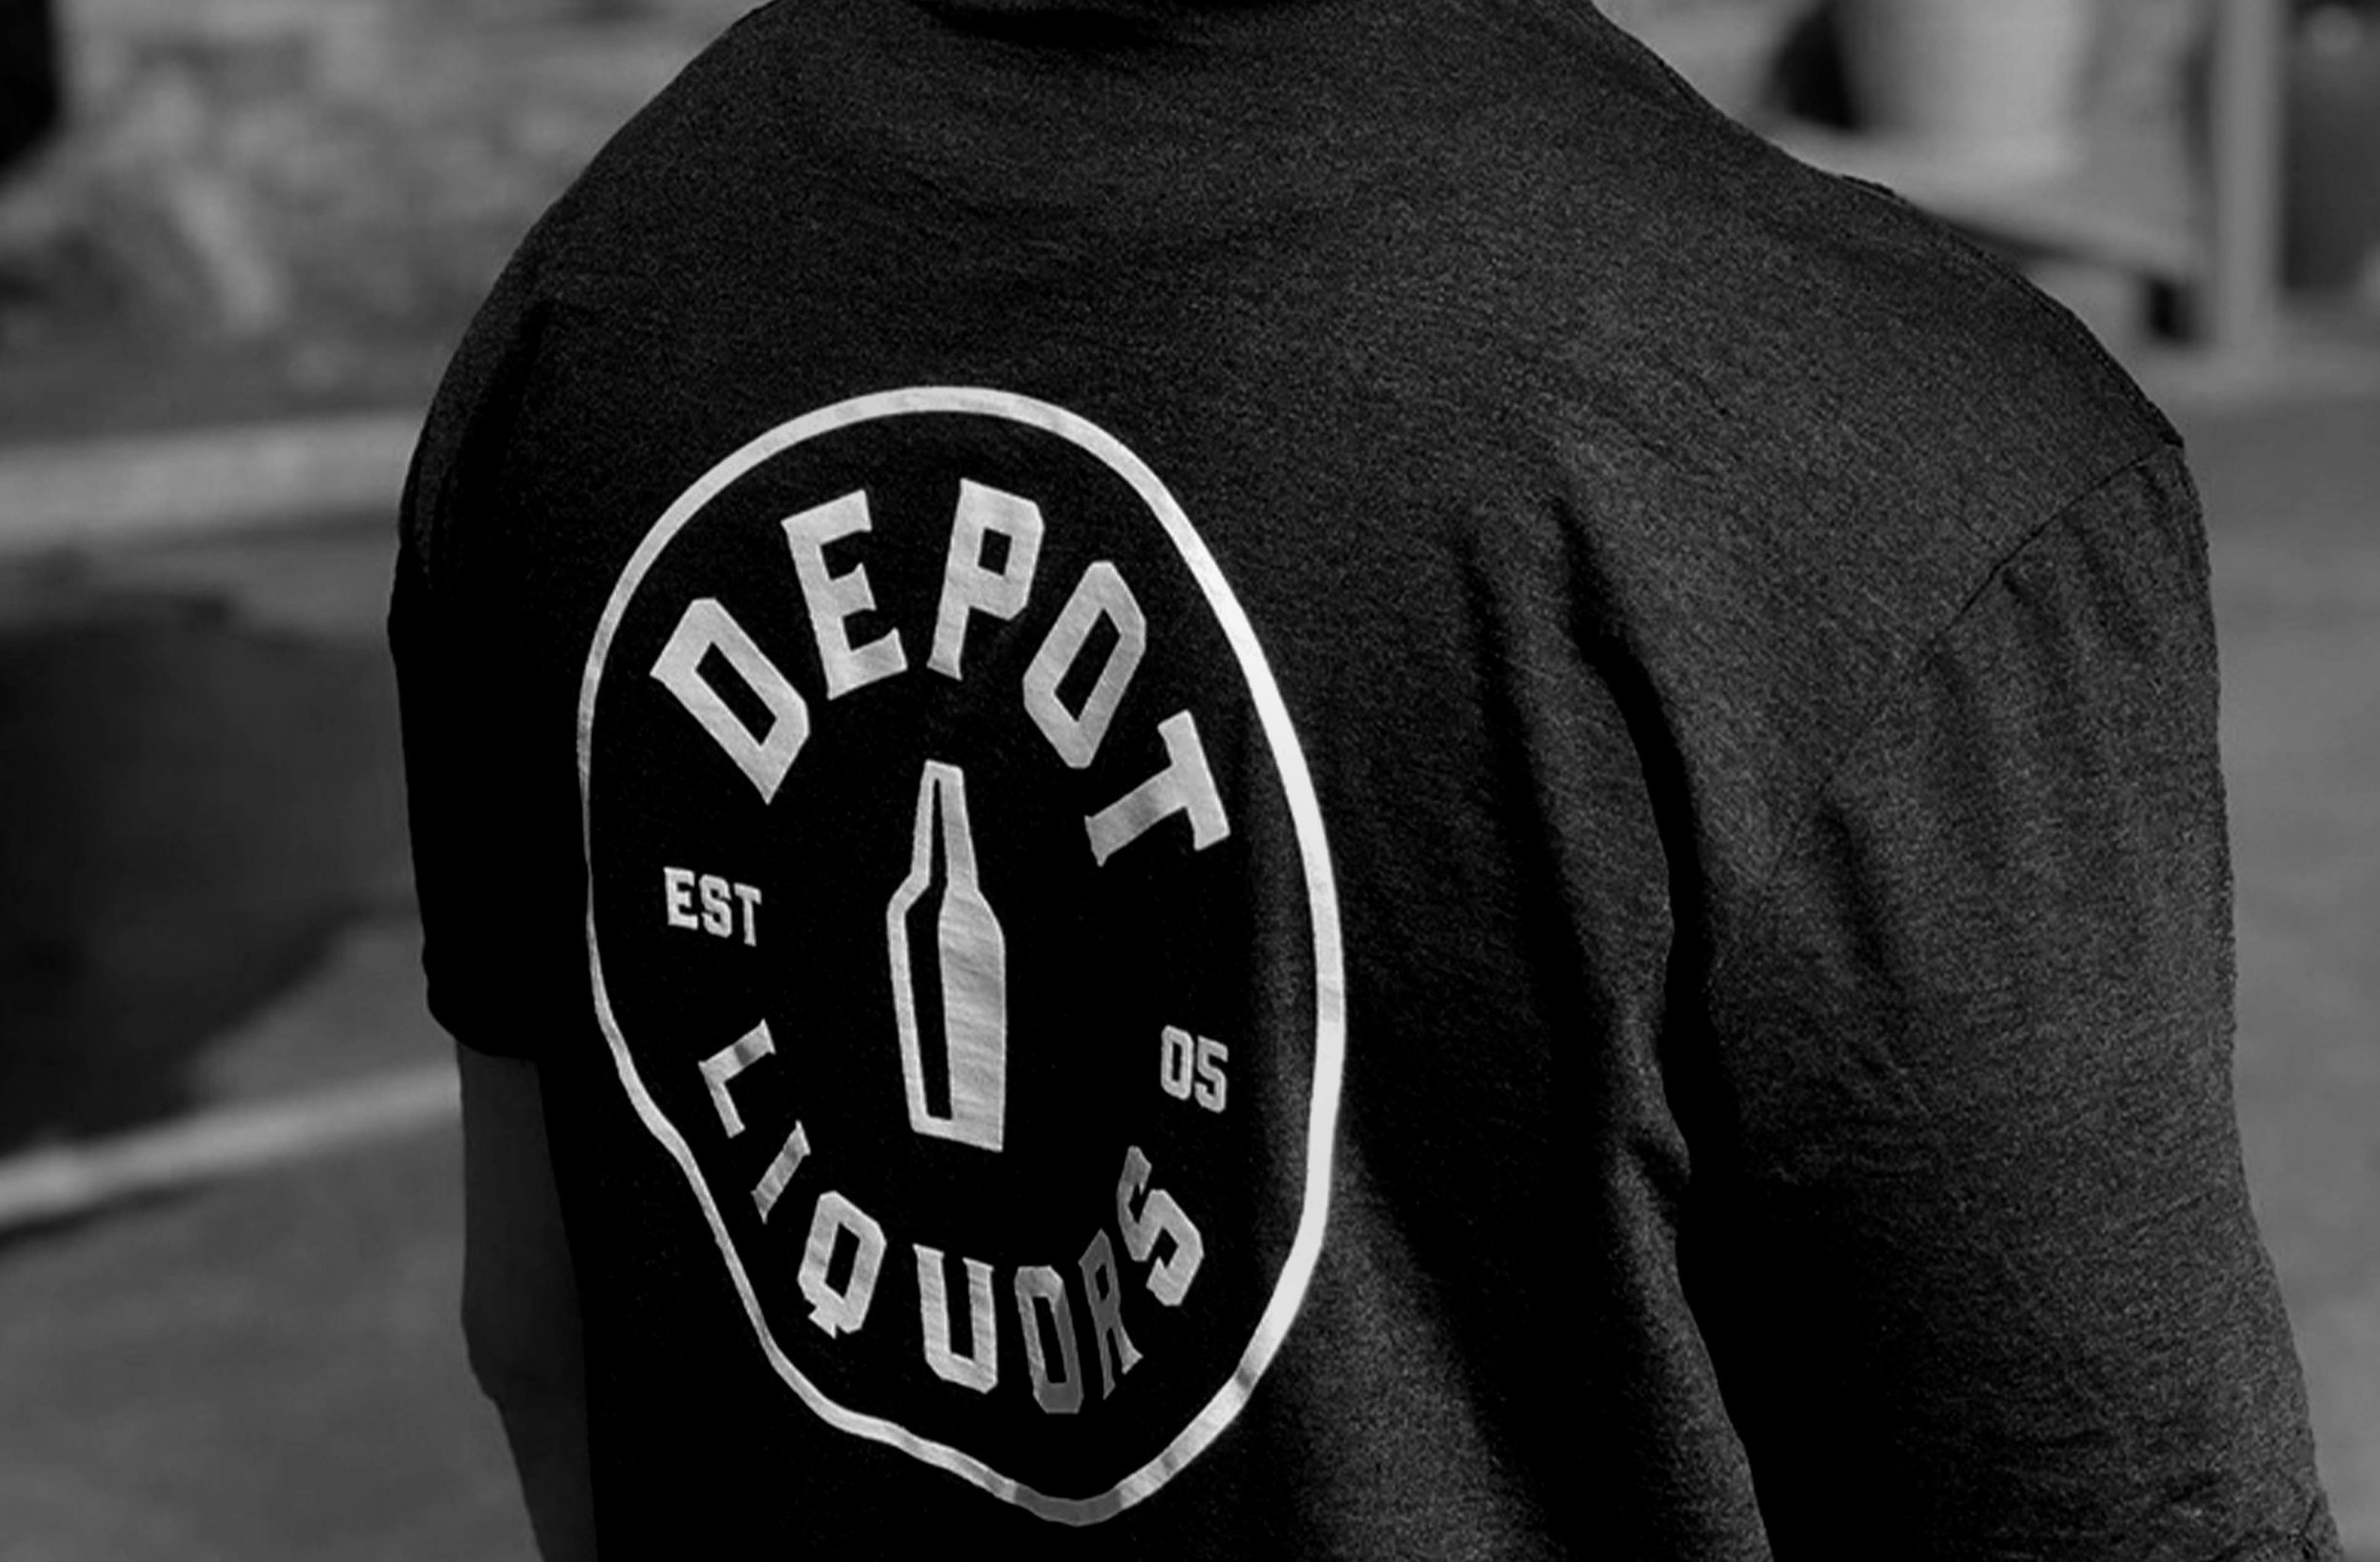 depot_shirt.jpg